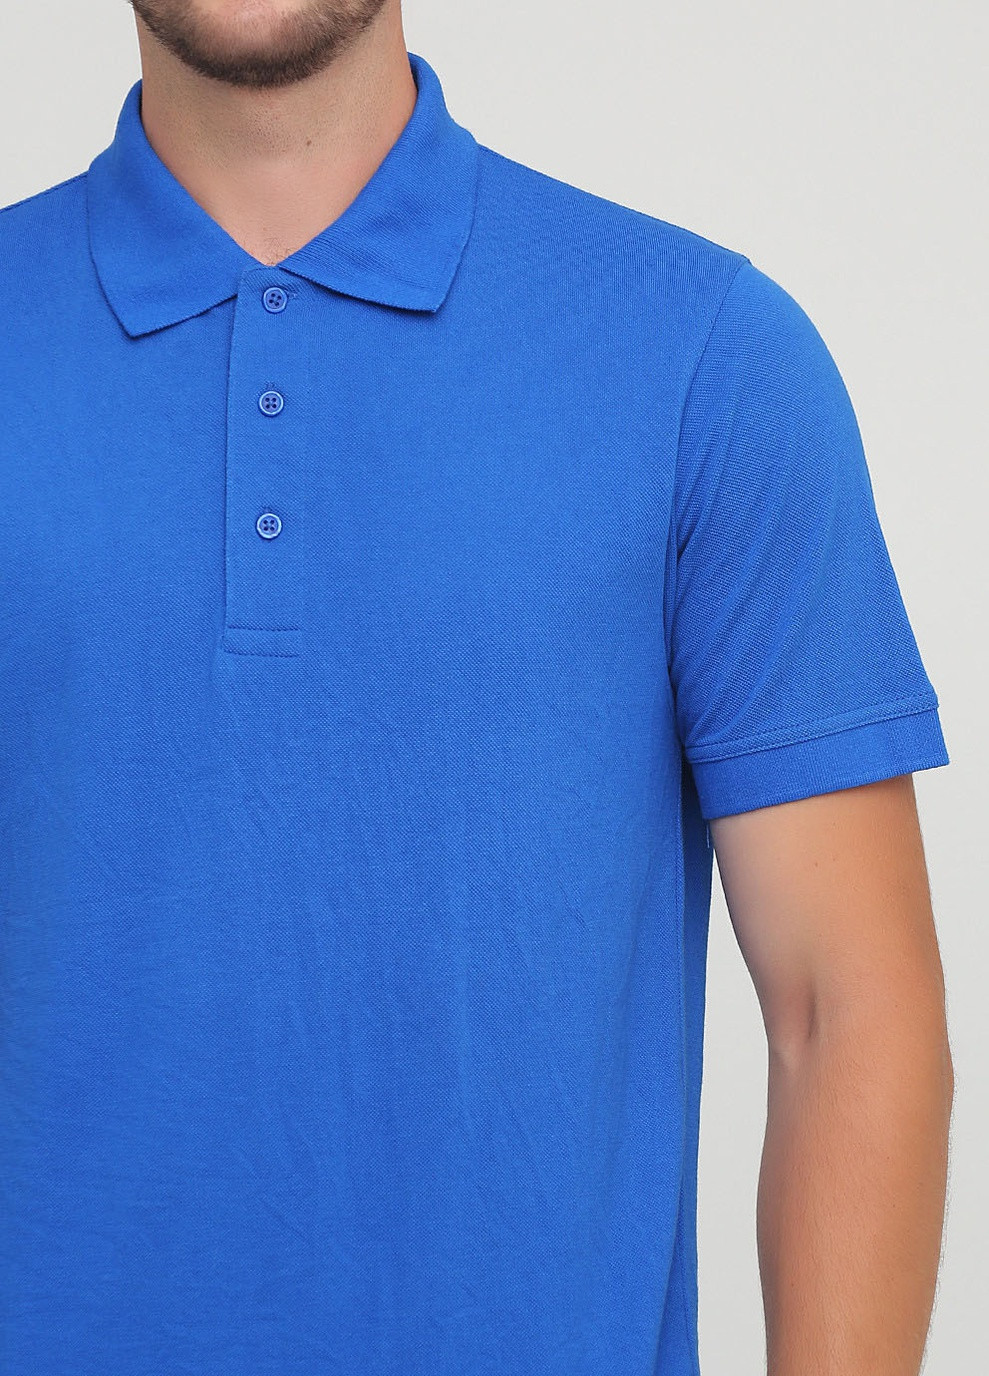 Синяя футболка-поло для мужчин Regatta